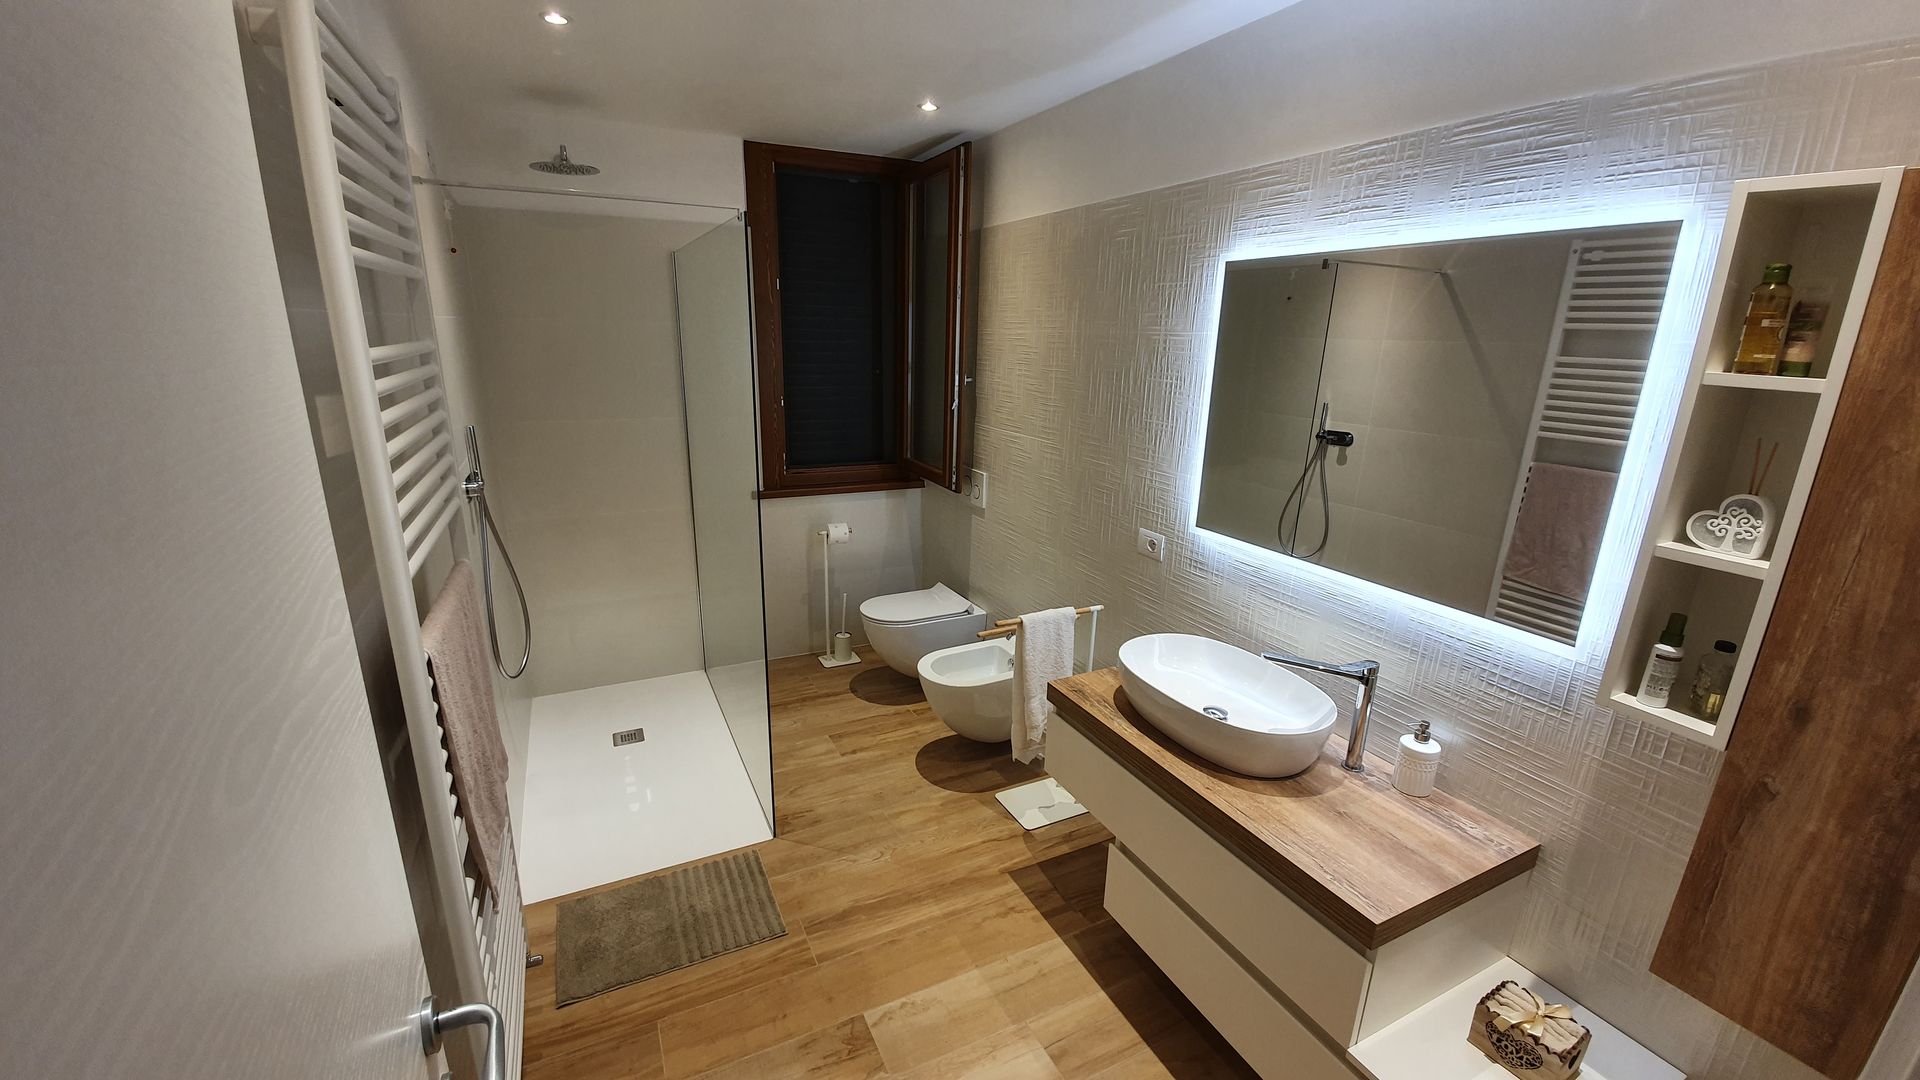 Progettazione e restyling dei bagni - 02 Ciesse Srl Bagno moderno bagno, grès, effetto legno, specchio led, doccia, minimal